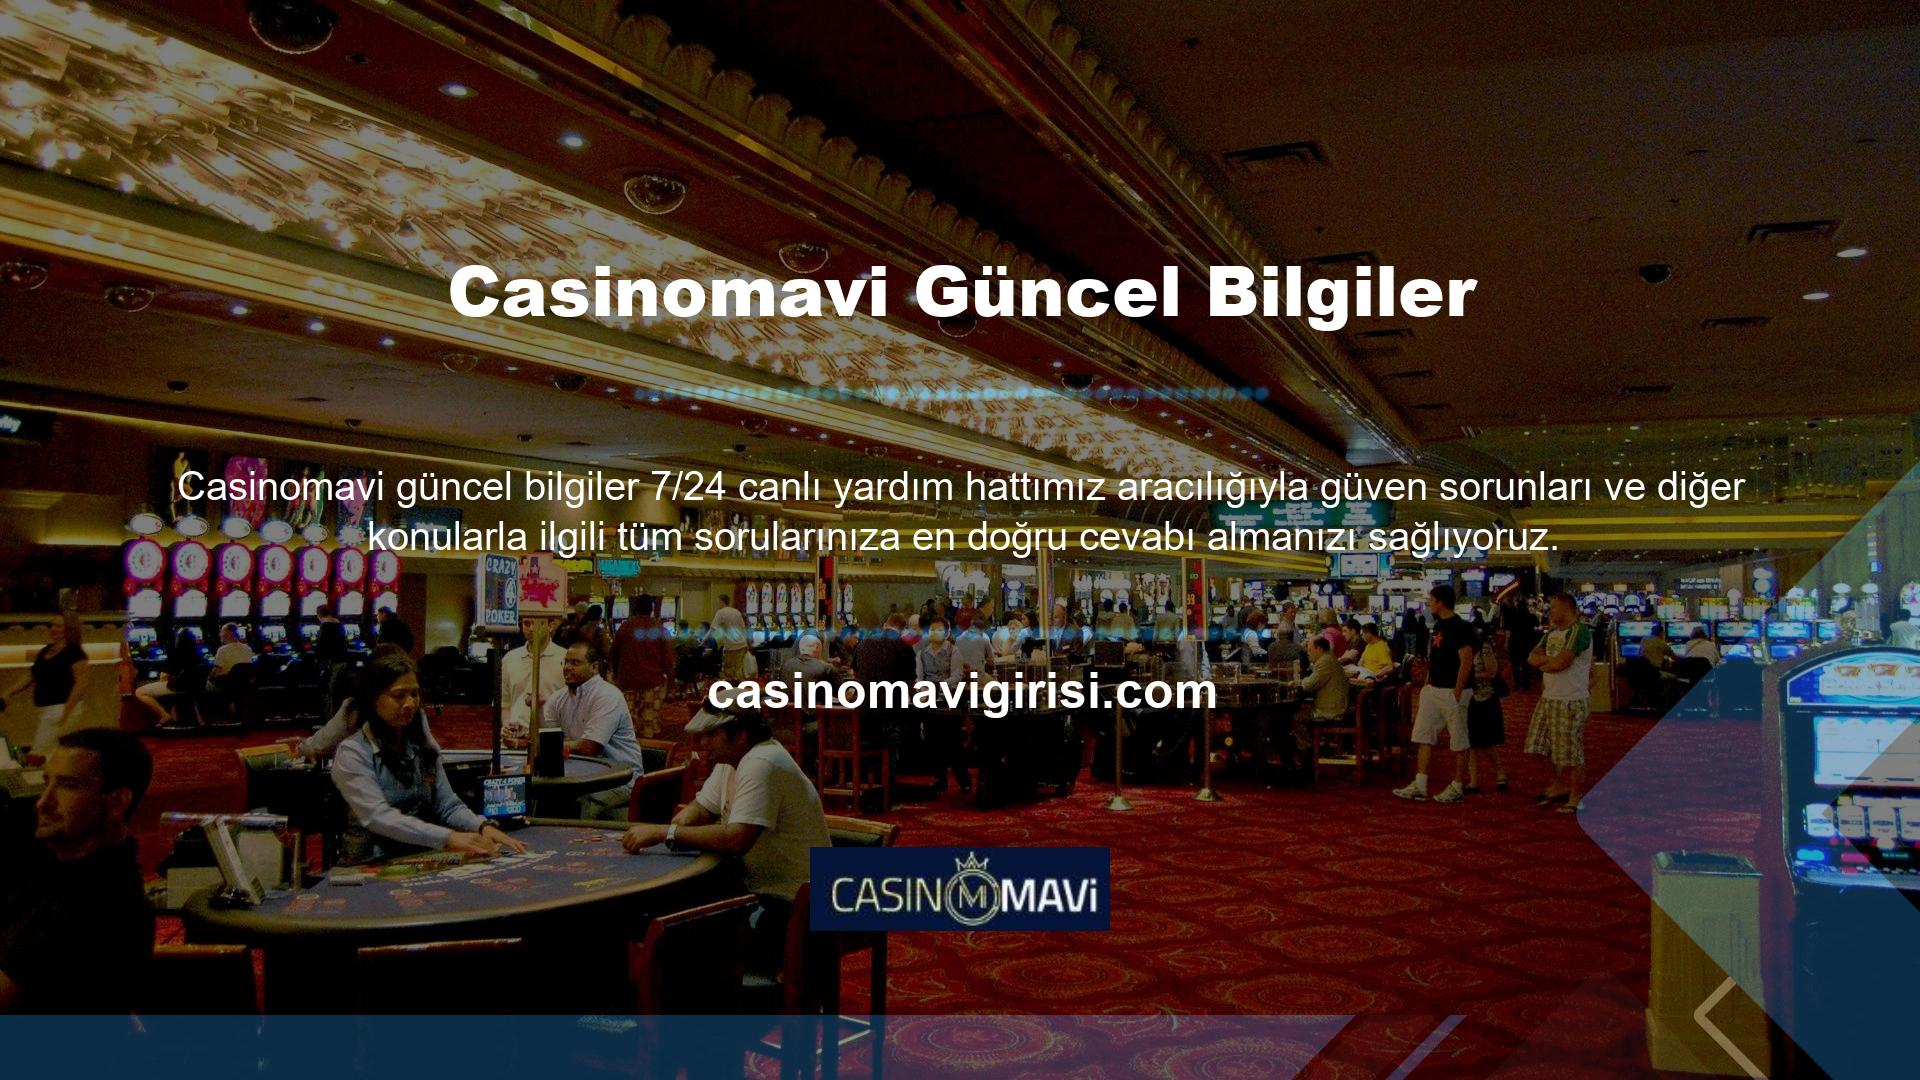 Casinomavi Login güncel adres değişikliğinde üyelere en kısa sürede bilgi verecektir